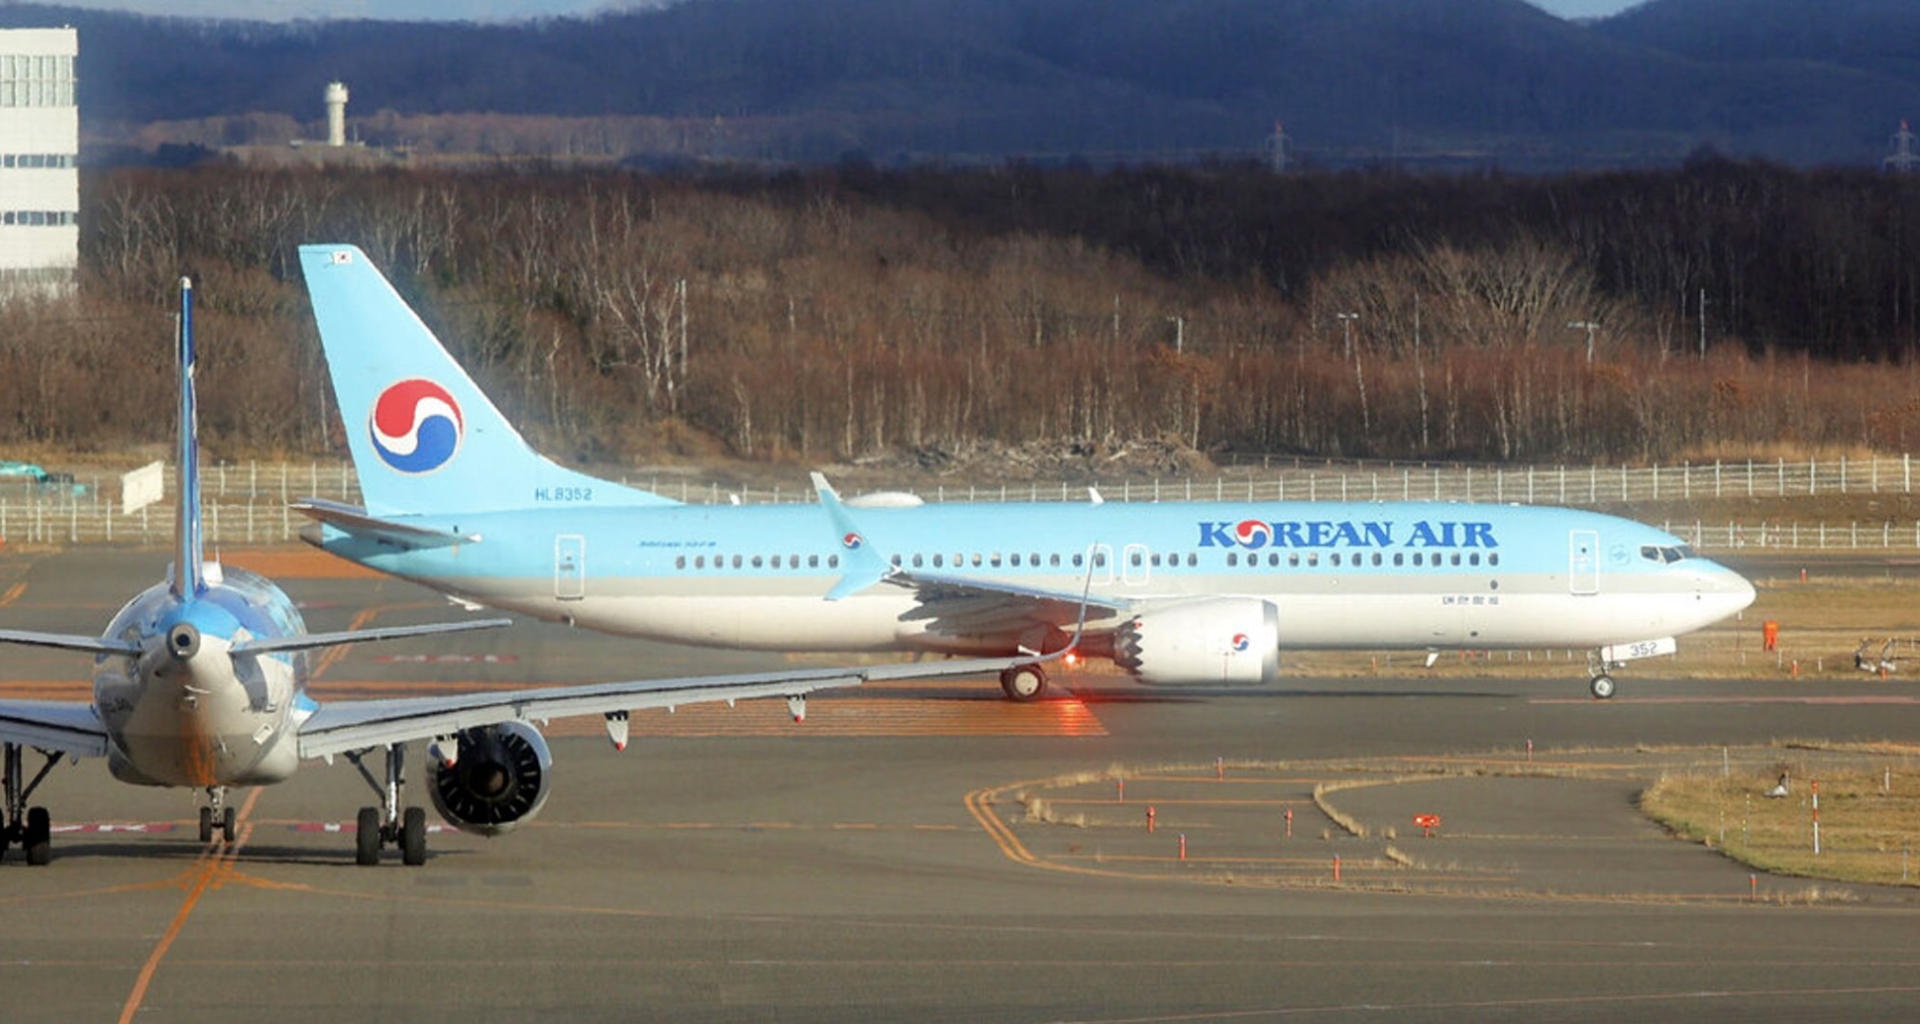 Chiếc máy bay của Korean Air đã va chạm với một chiếc máy bay khác trên sân bay ở Hokkaido Nhật Bản